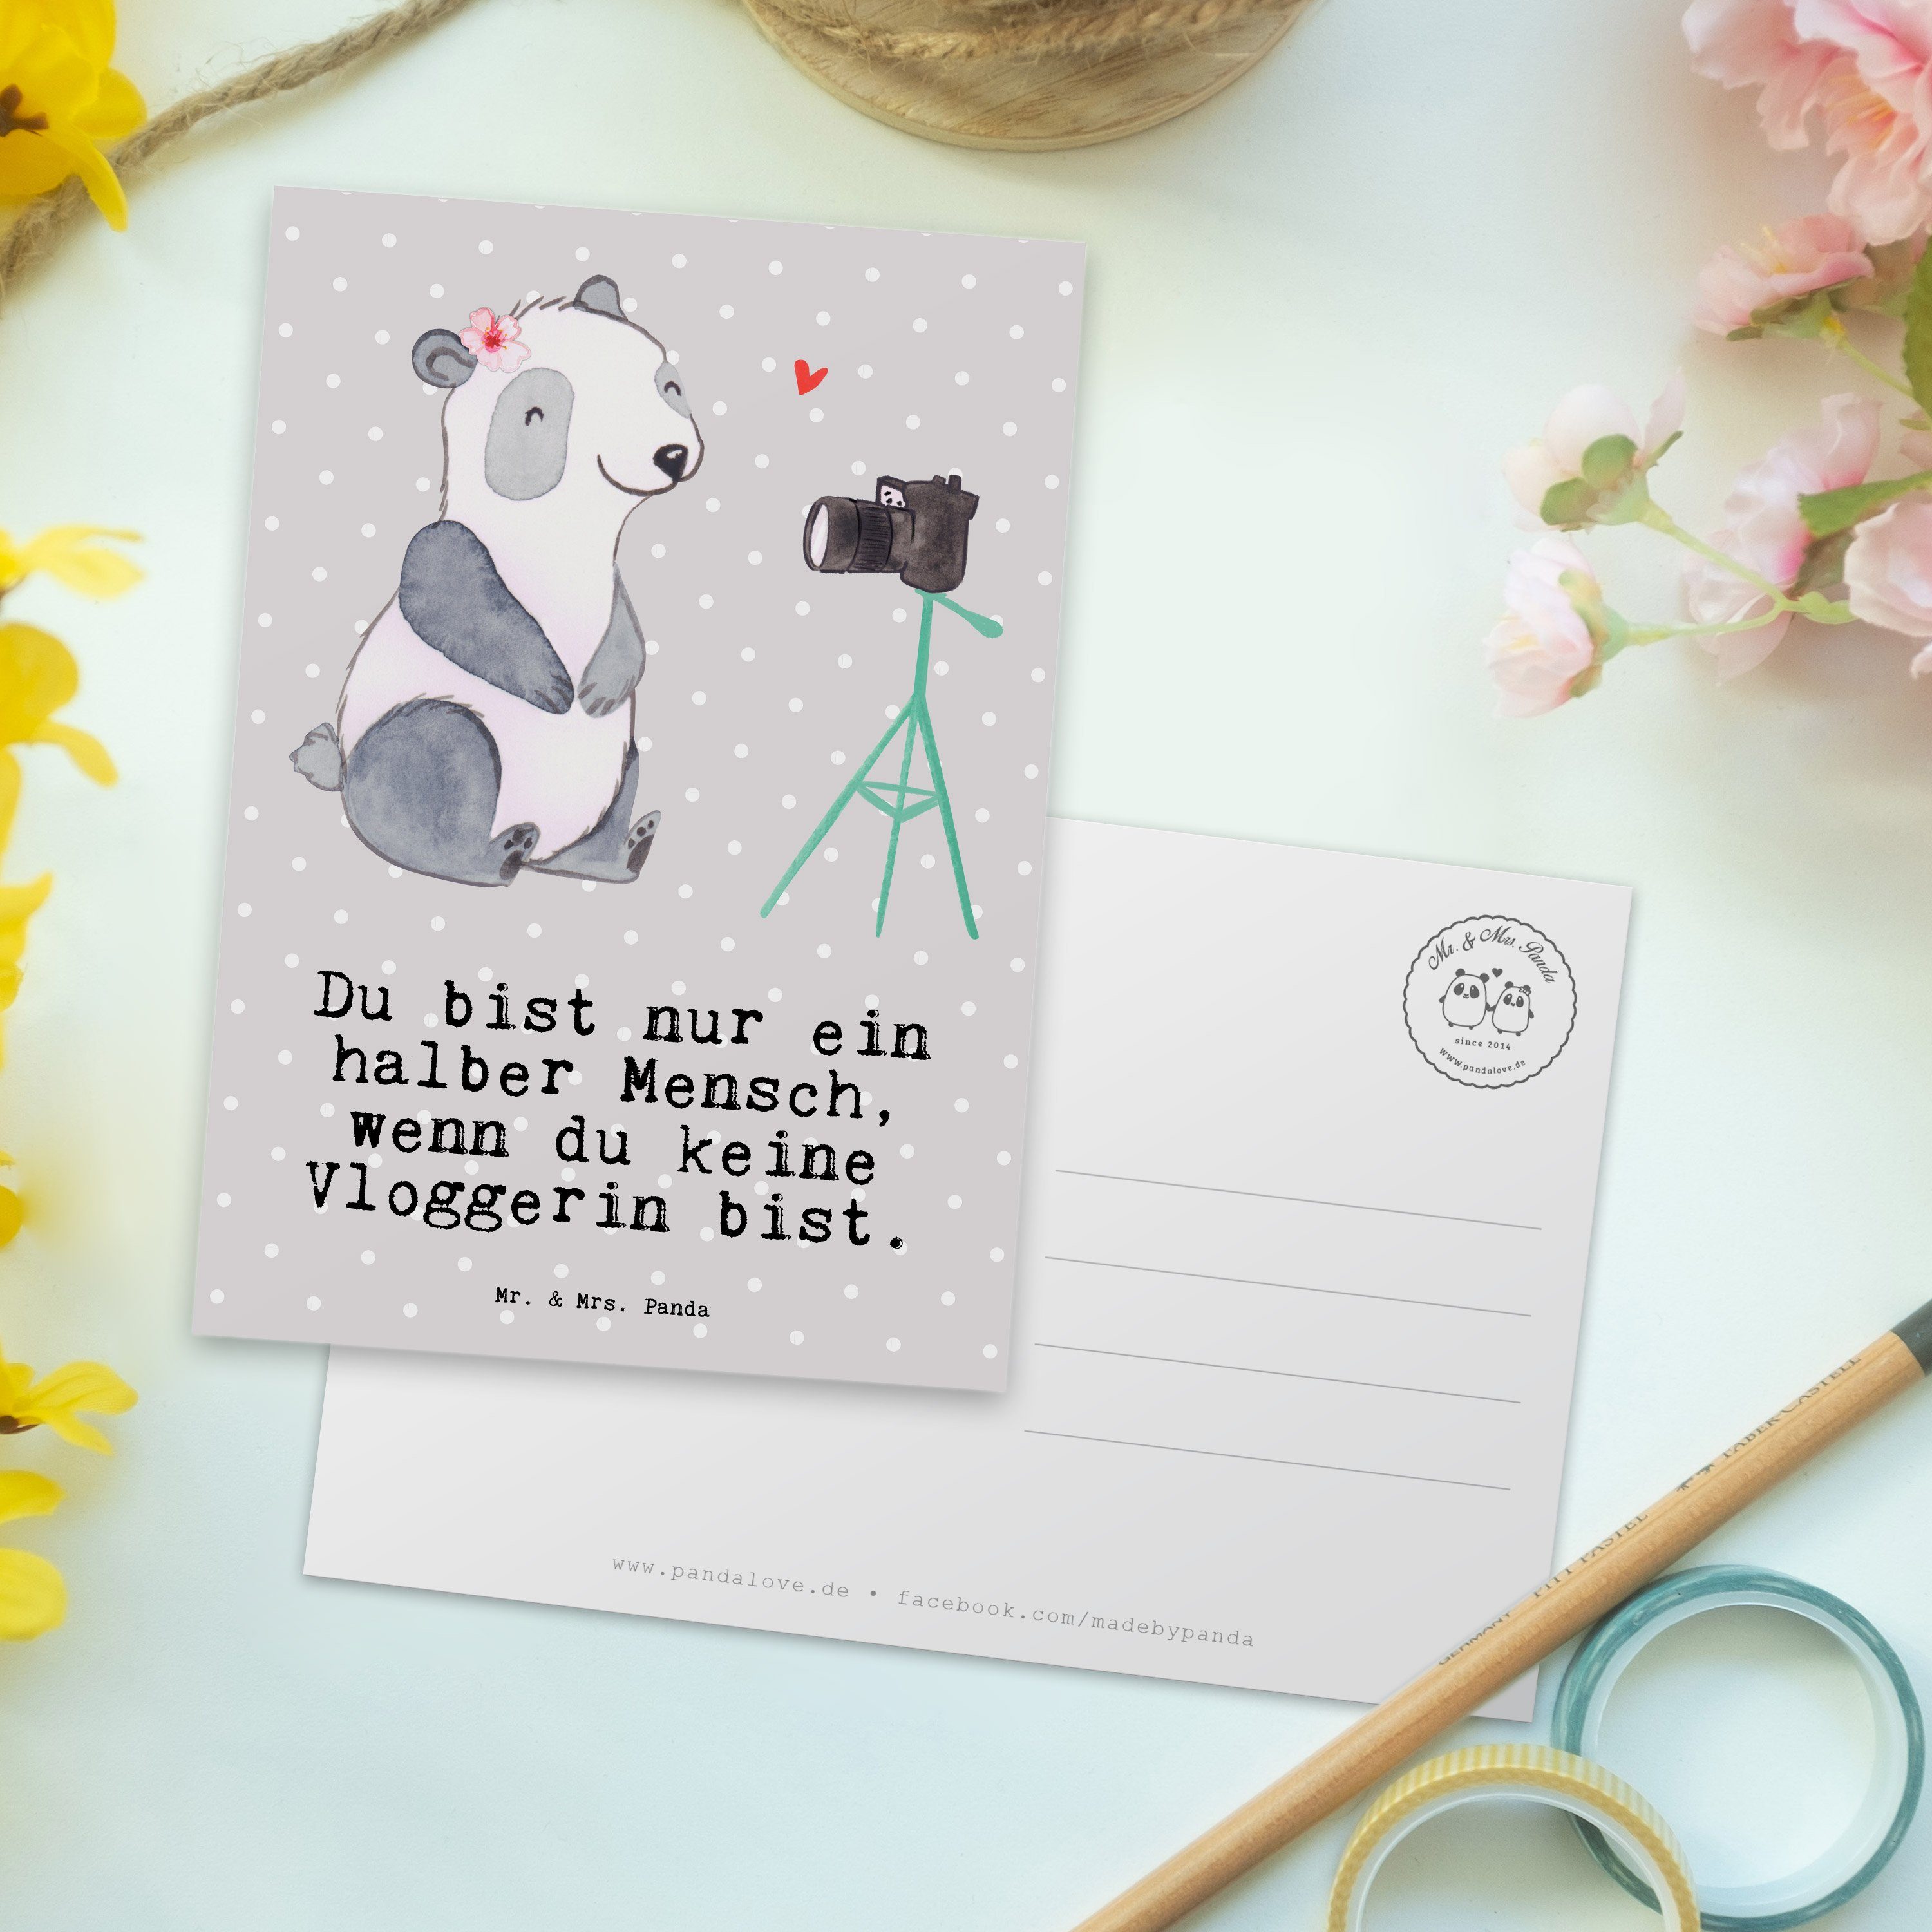 Pastell Einladung, Geschenk, & Grau Herz Postkarte Sc mit Panda Vloggerin Mrs. Mr. Abschied, - -